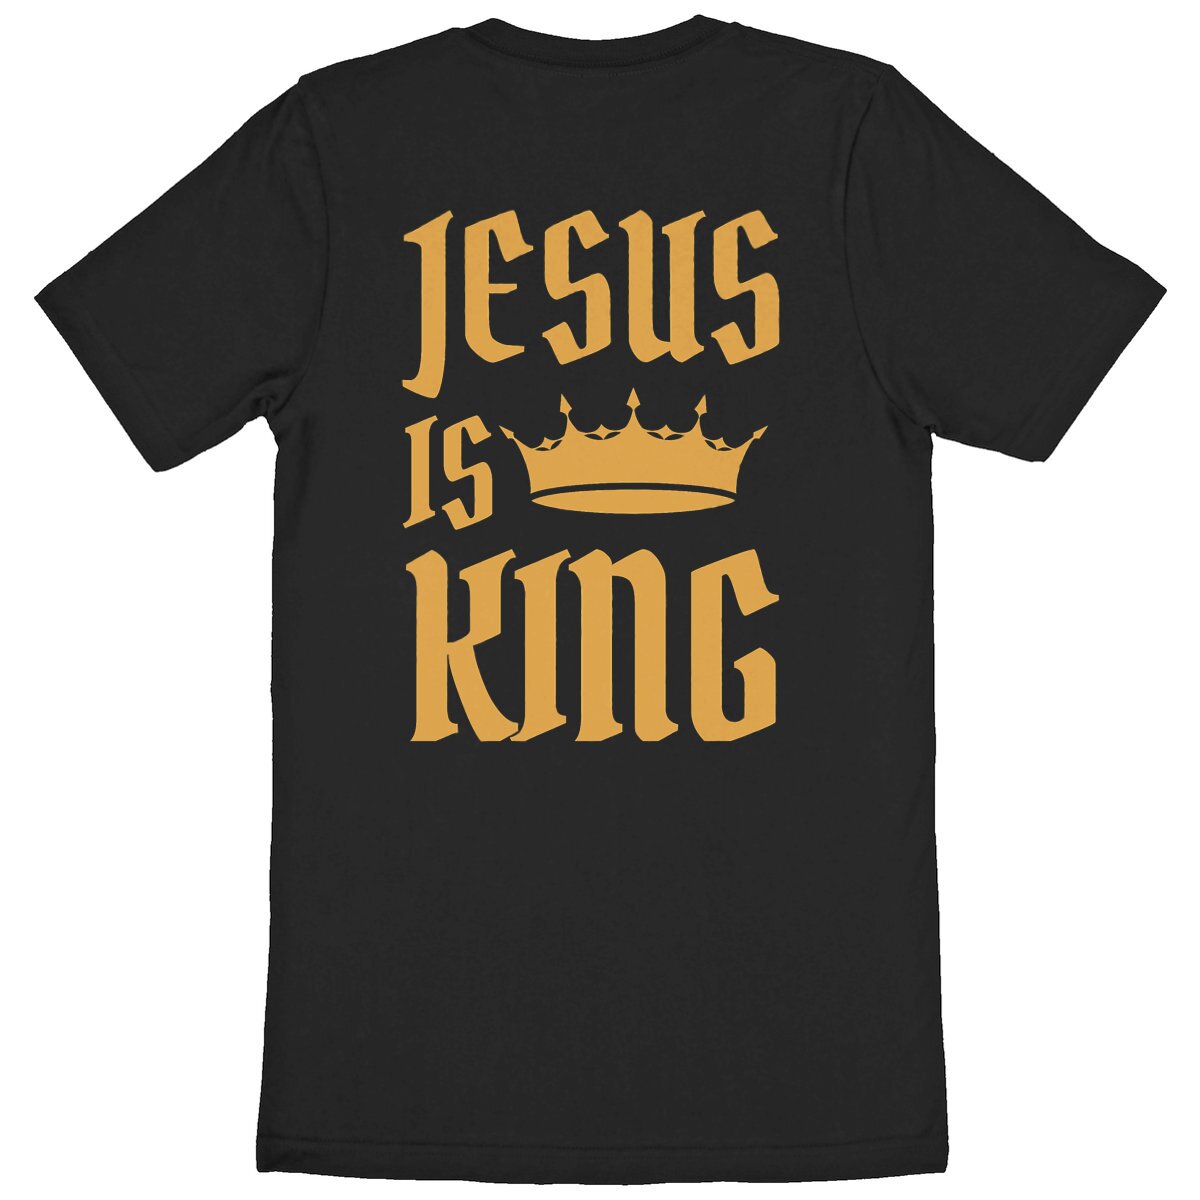 JESUS IS KING ORGANIC T-SHIRT